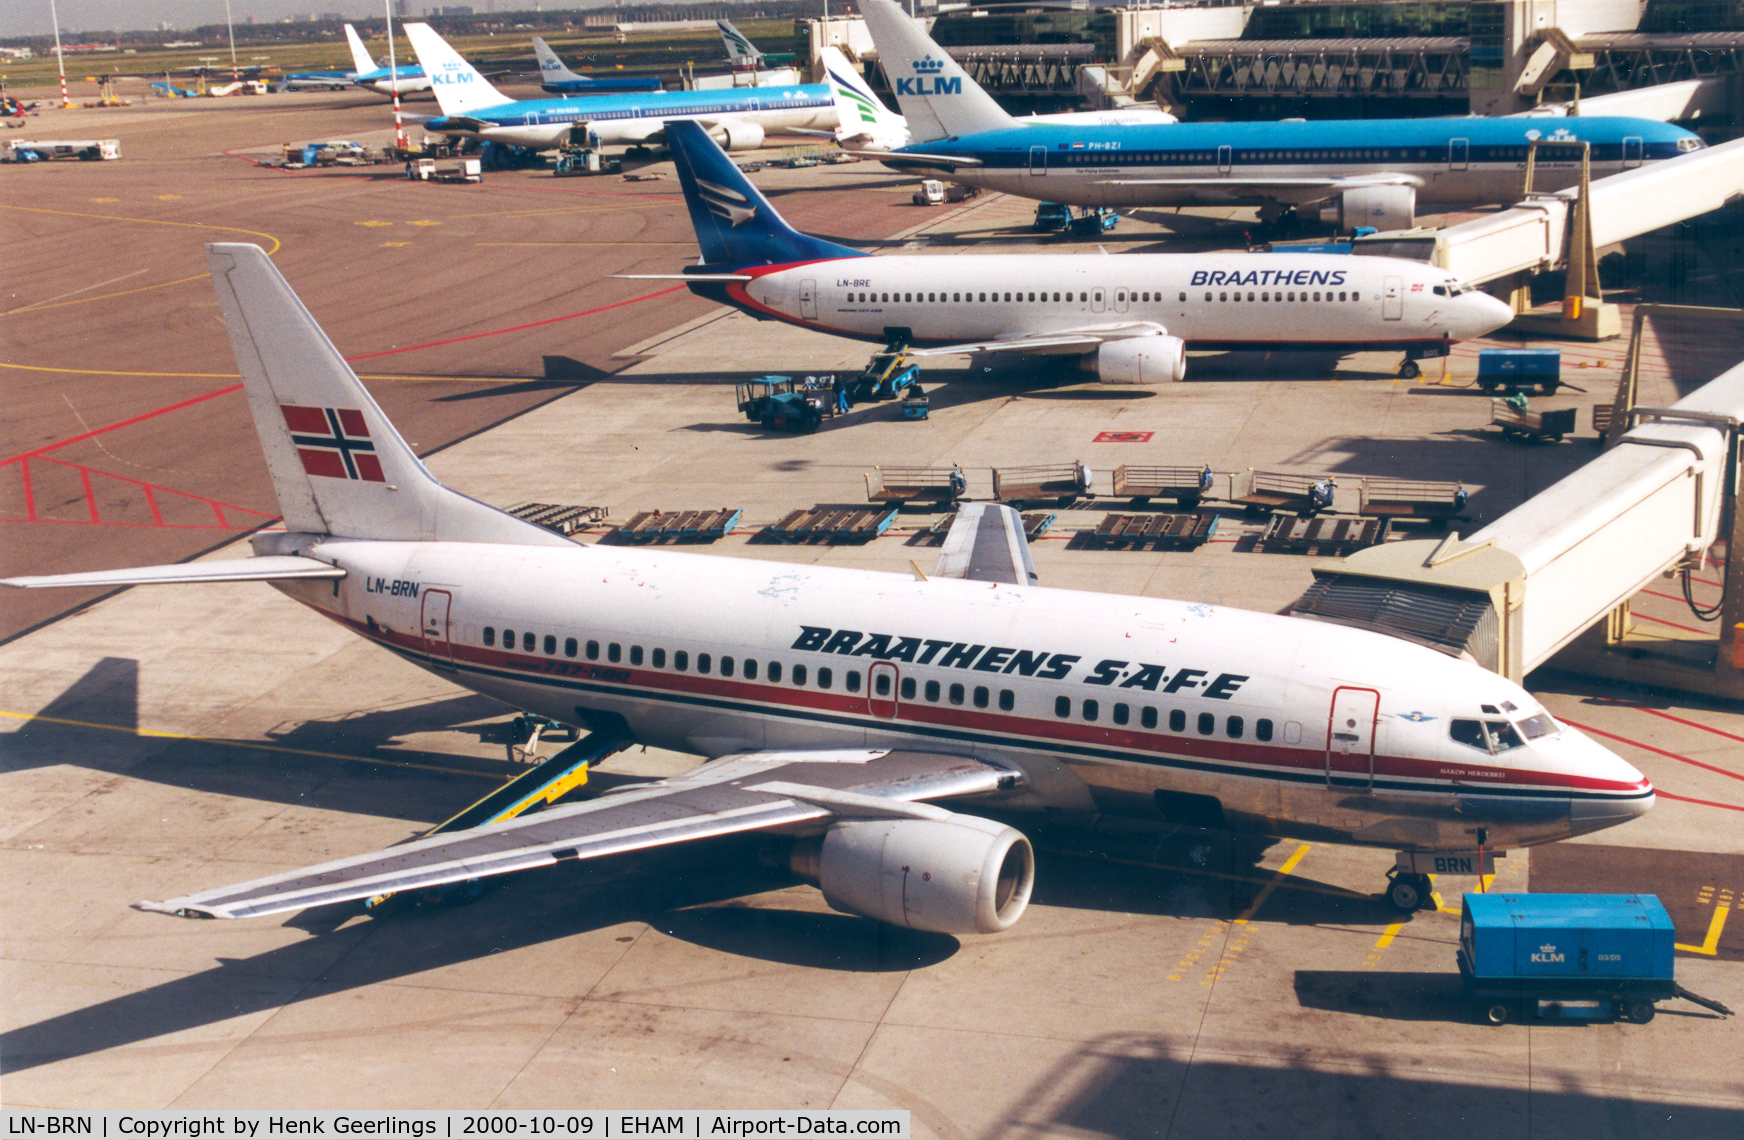 LN-BRN, 1991 Boeing 737-505 C/N 24646, Braathens, behind LN-BRN is LN-BRE with new cs